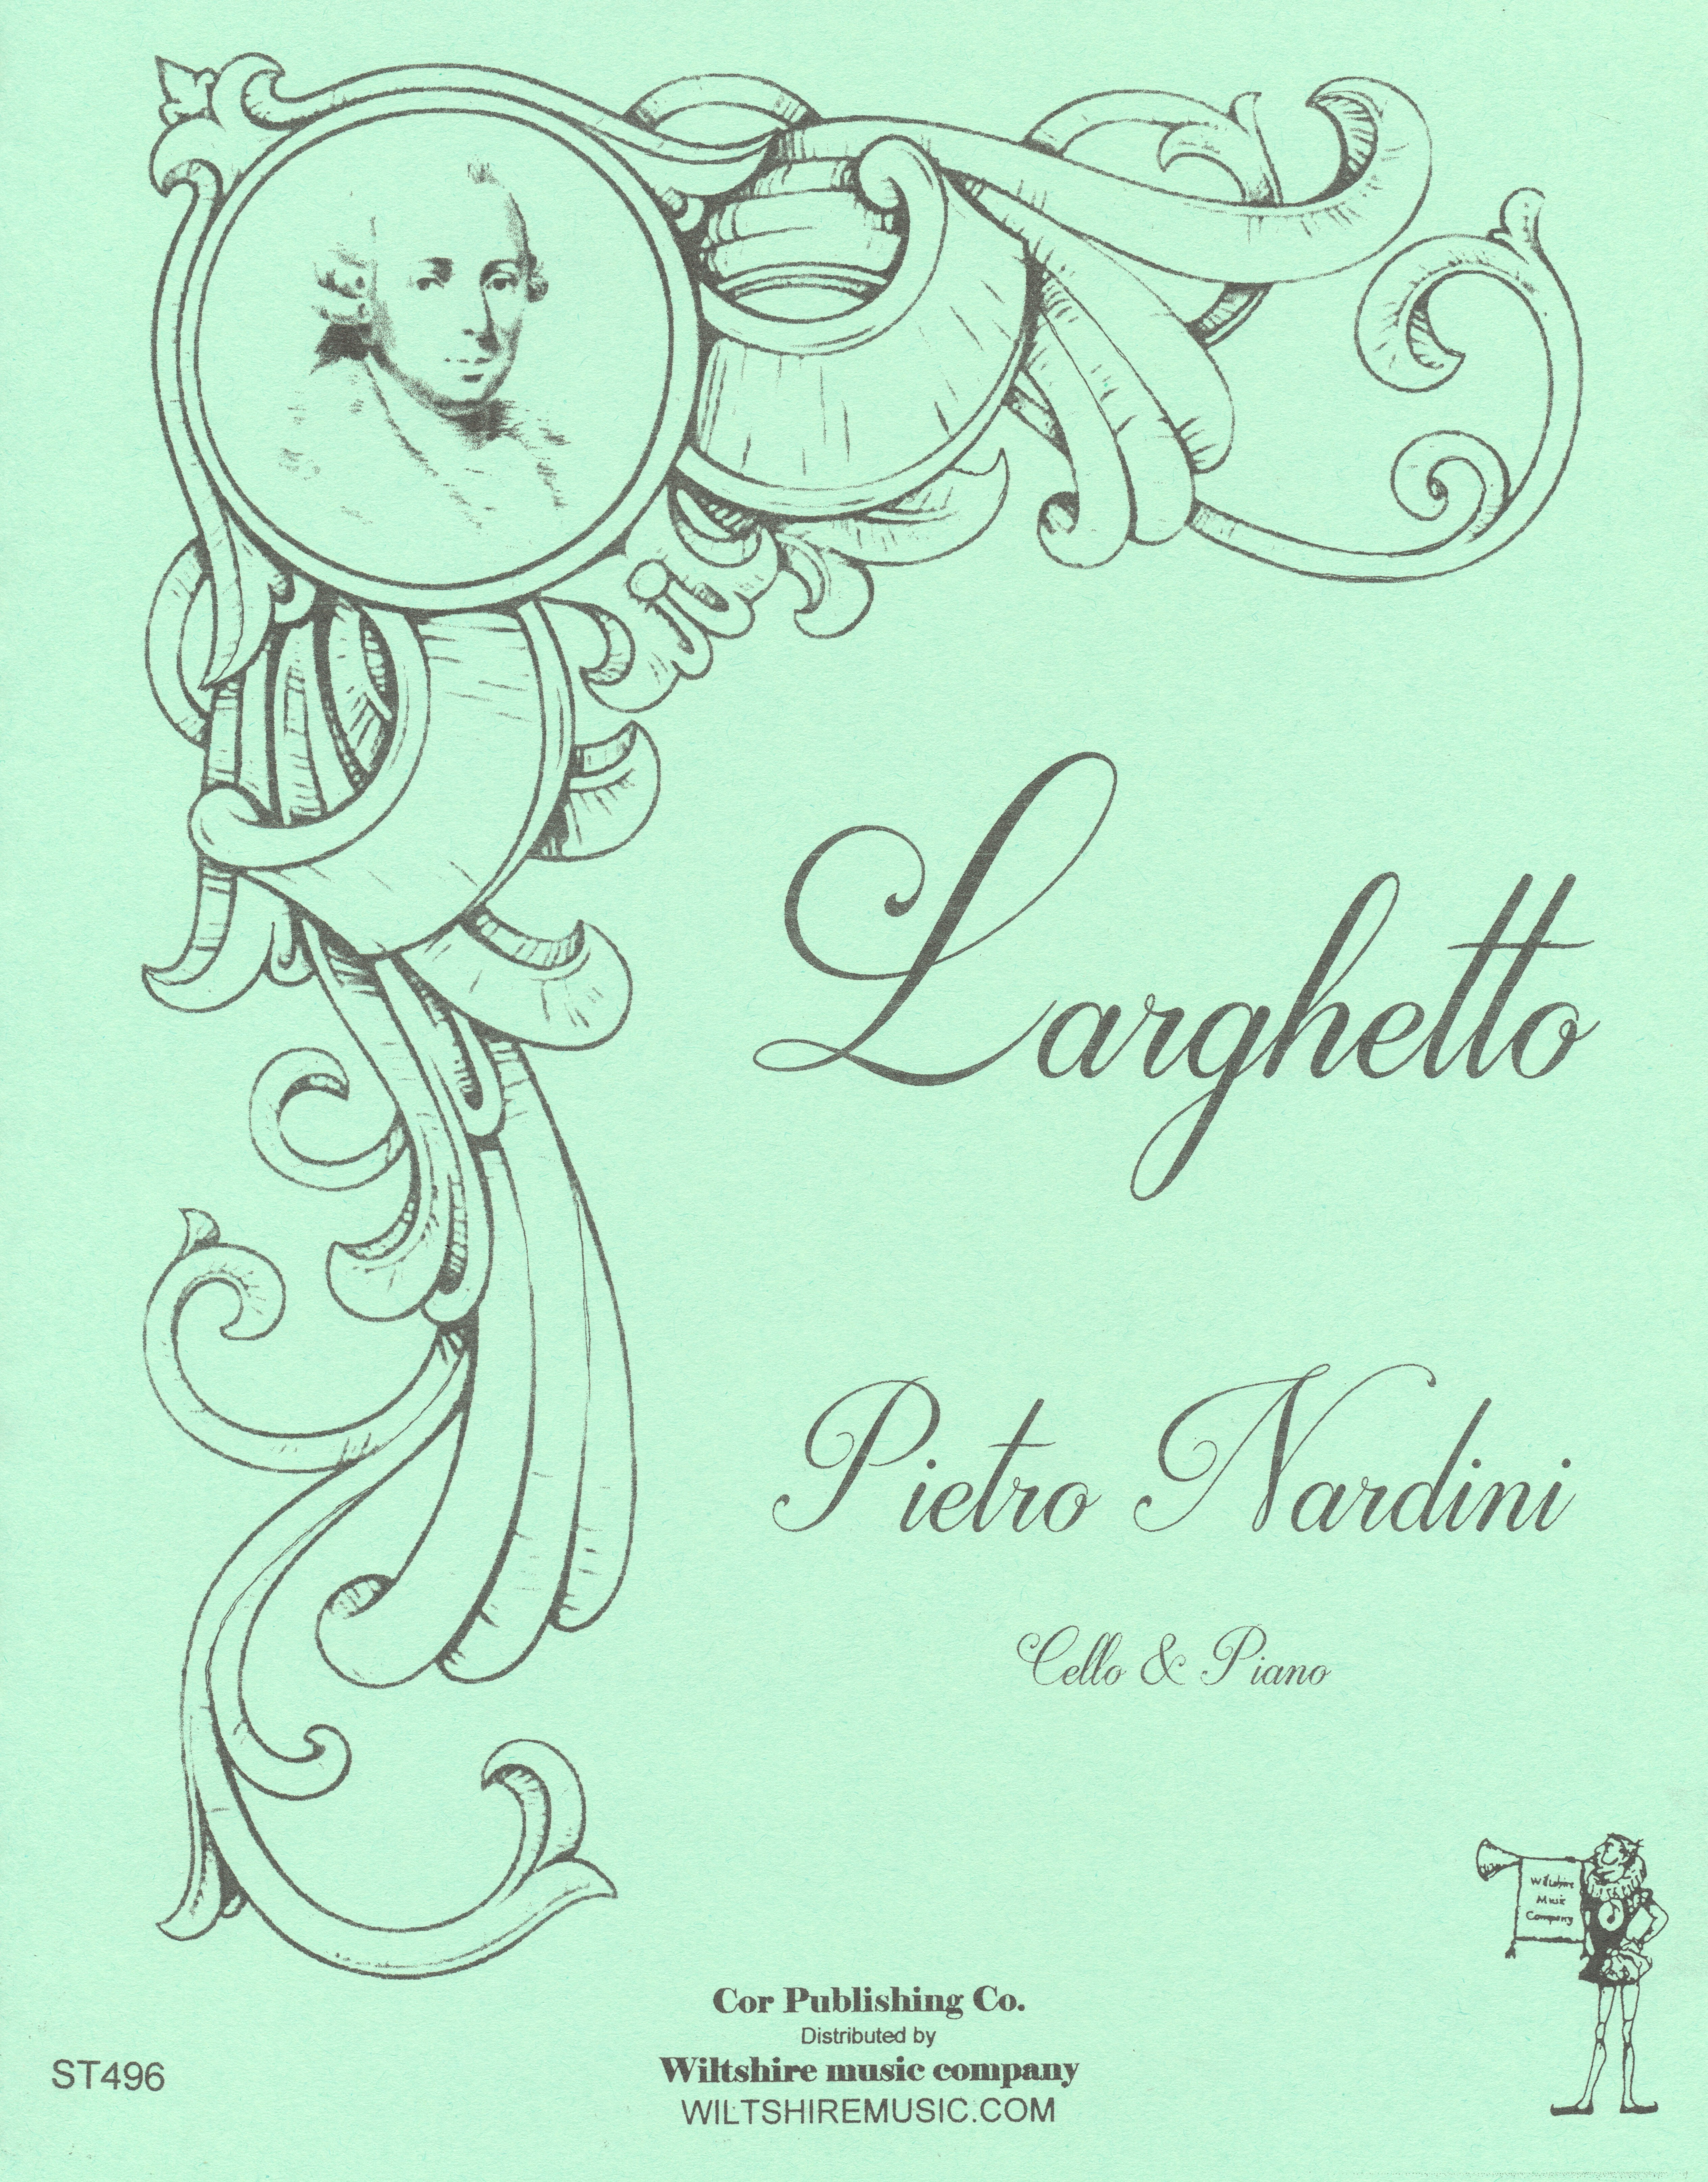 Larghetto, Pietro Nardini, cello & piano